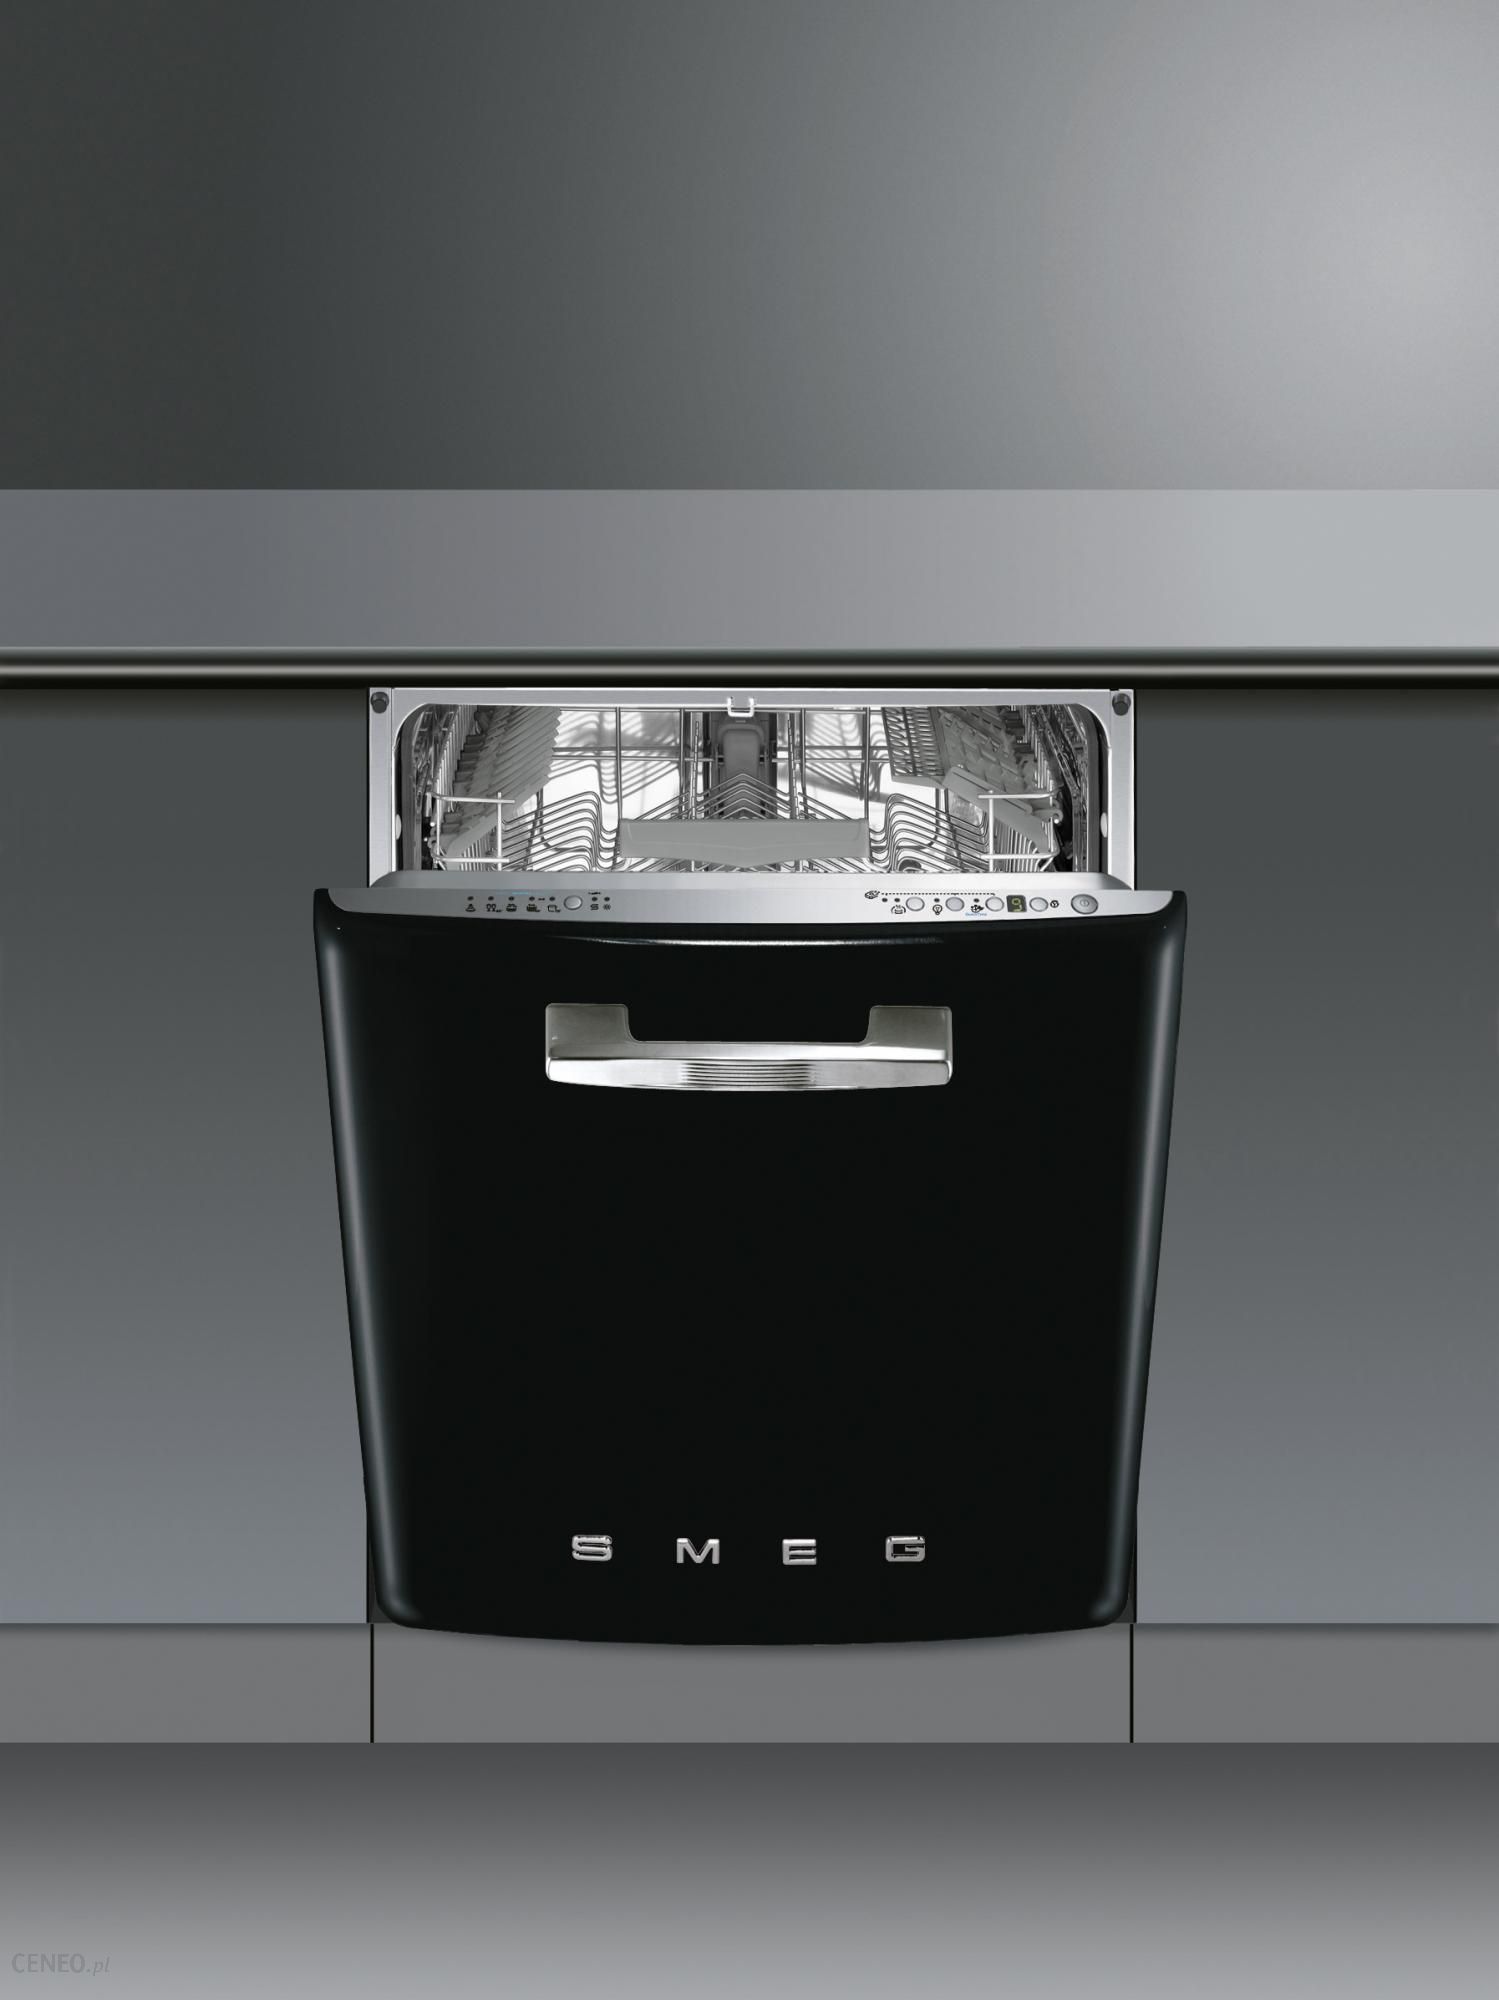 Встраиваемая посудомоечная машина черная. Смег посудомоечная машина встраиваемая. Смег посудомоечная машина st363cl. Встраиваемая посудомоечная машина, стиль 50-х, 60 см, чёрный Smeg st2fabbl2. Встраиваемая посудомоечная машина Smeg.